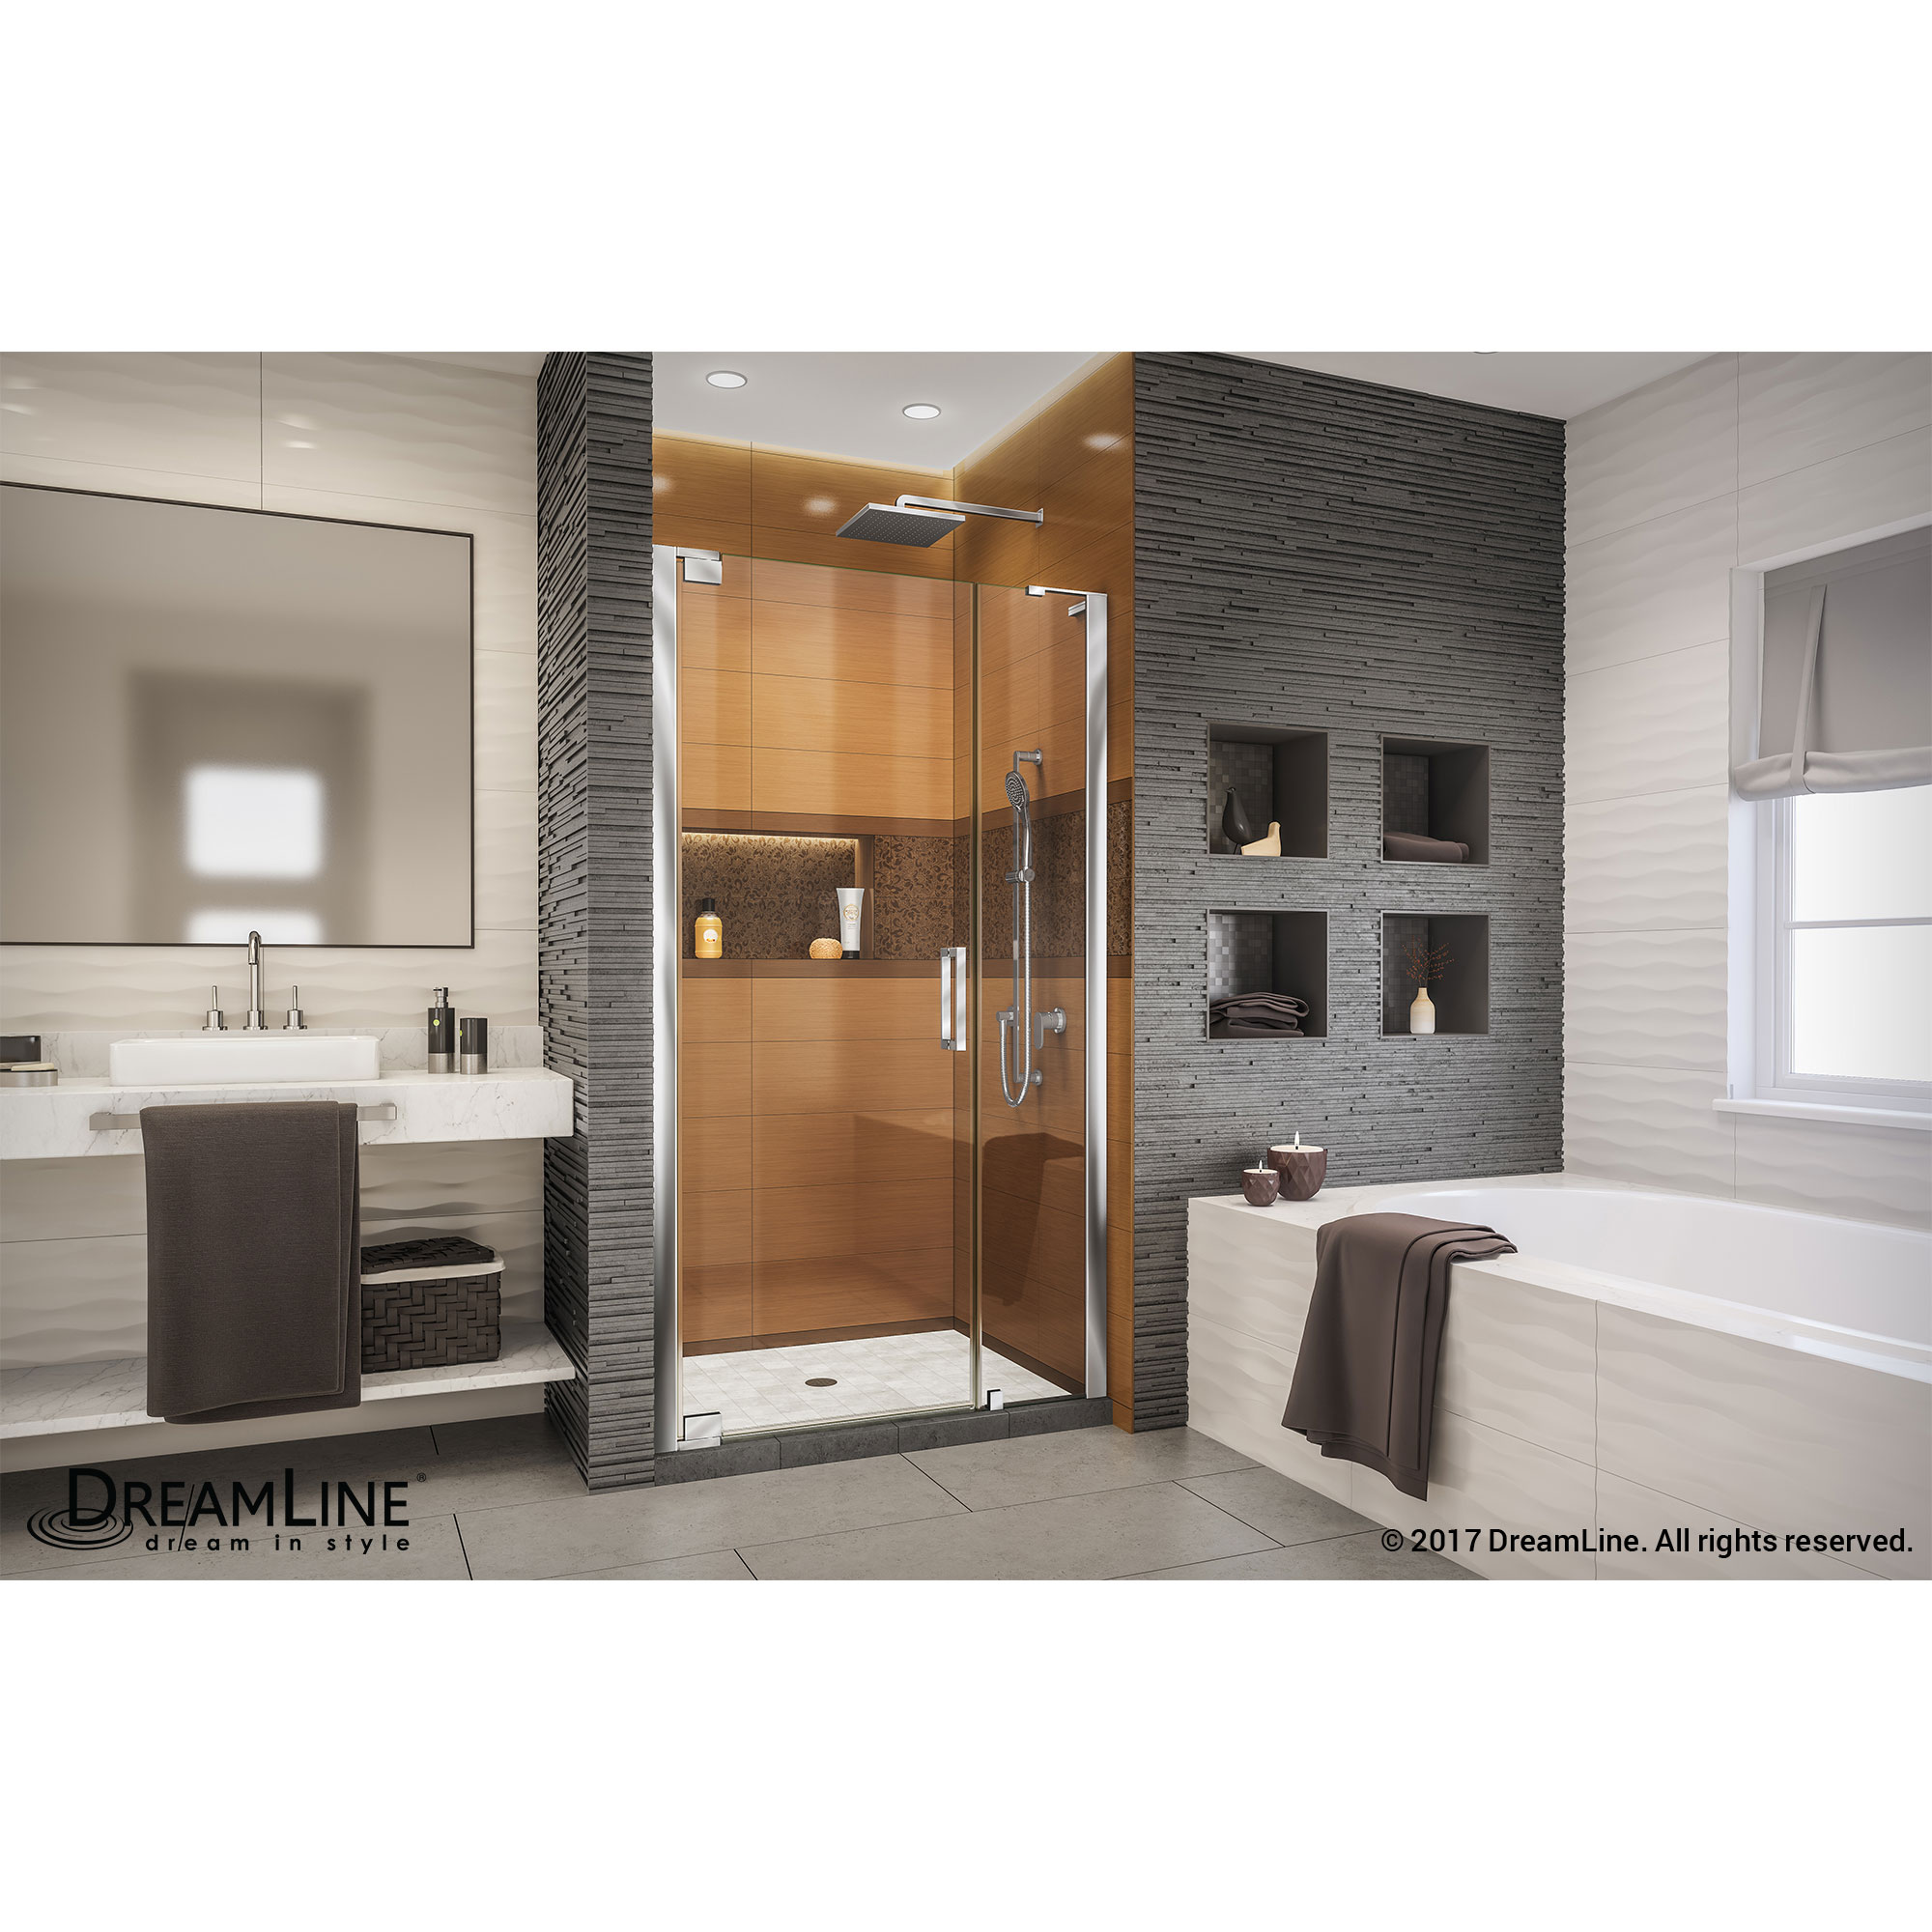 DreamLine Elegance-LS 44 - 46 in. W x 72 in. H Frameless Pivot Shower Door in Chrome